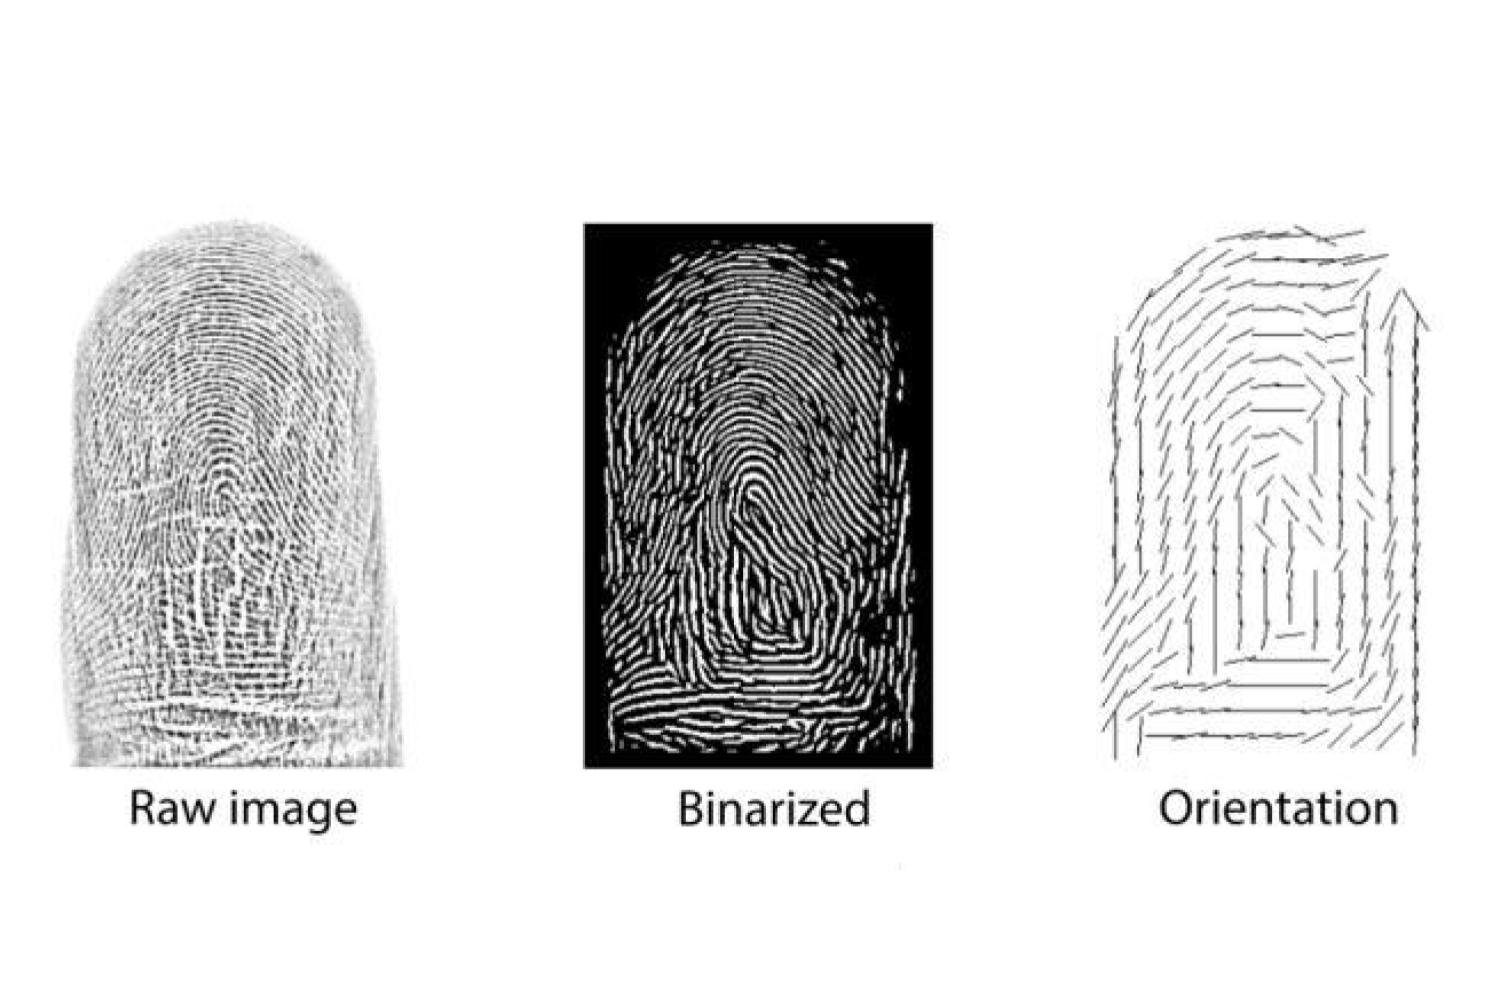 Le nostre impronte digitali non sono così uniche come pensavamo